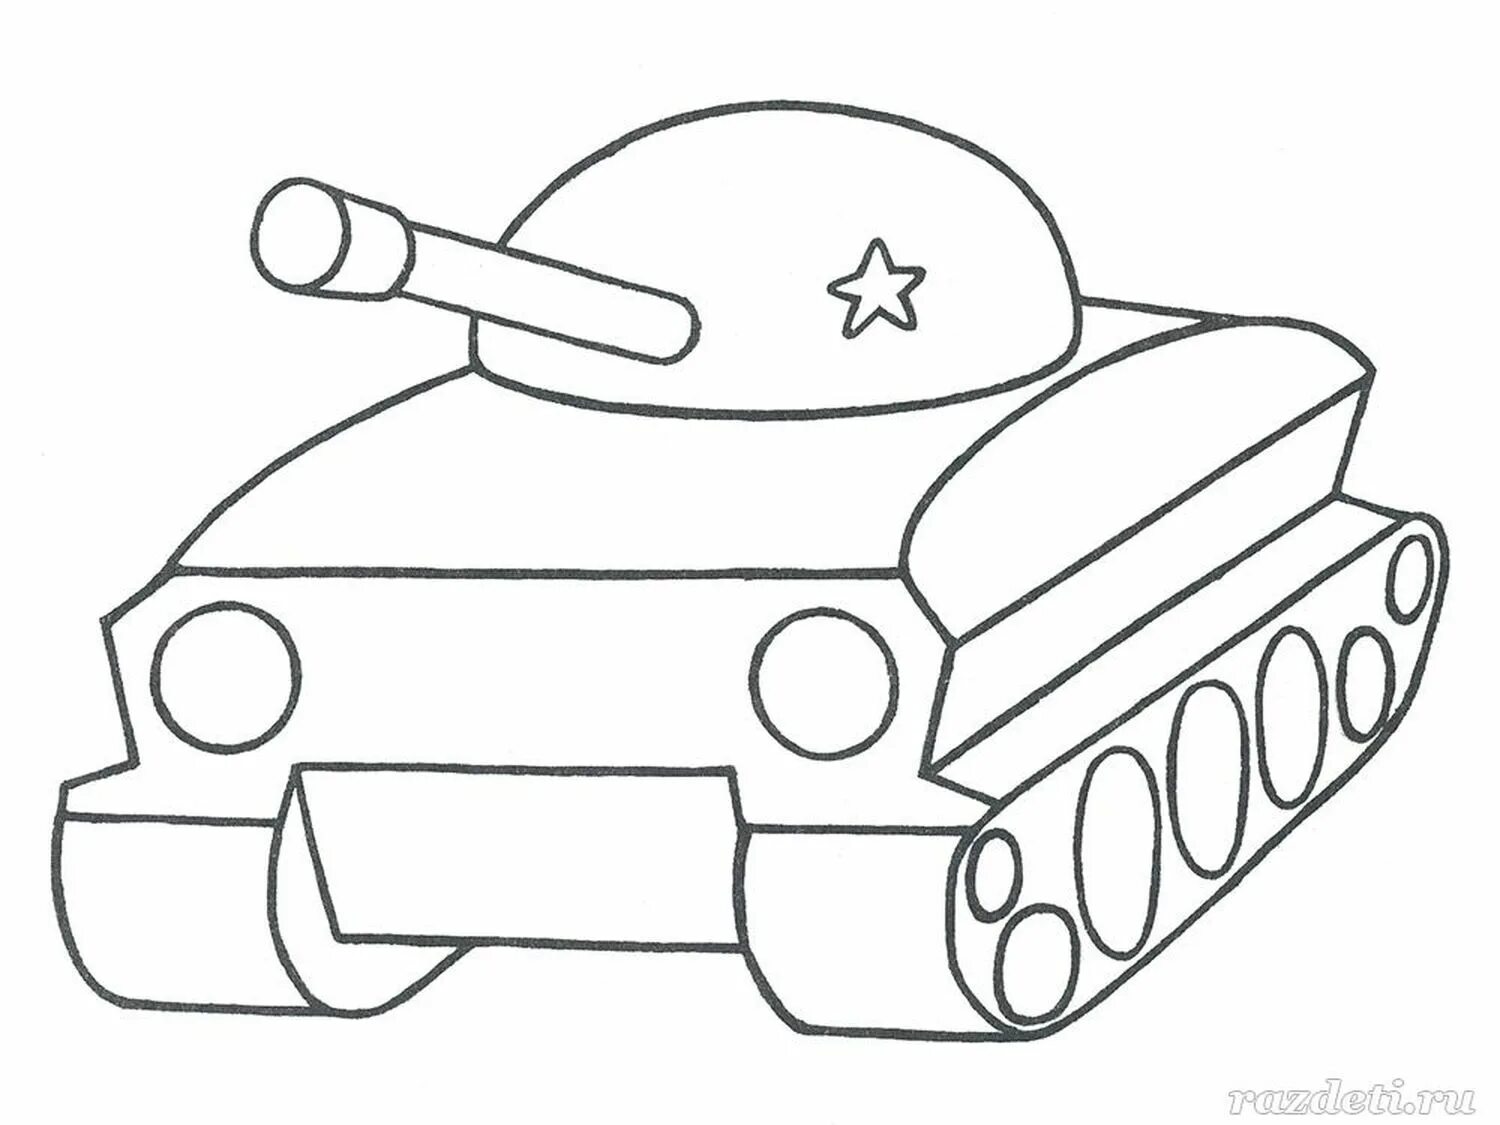 Стильная раскраска танков для младенцев